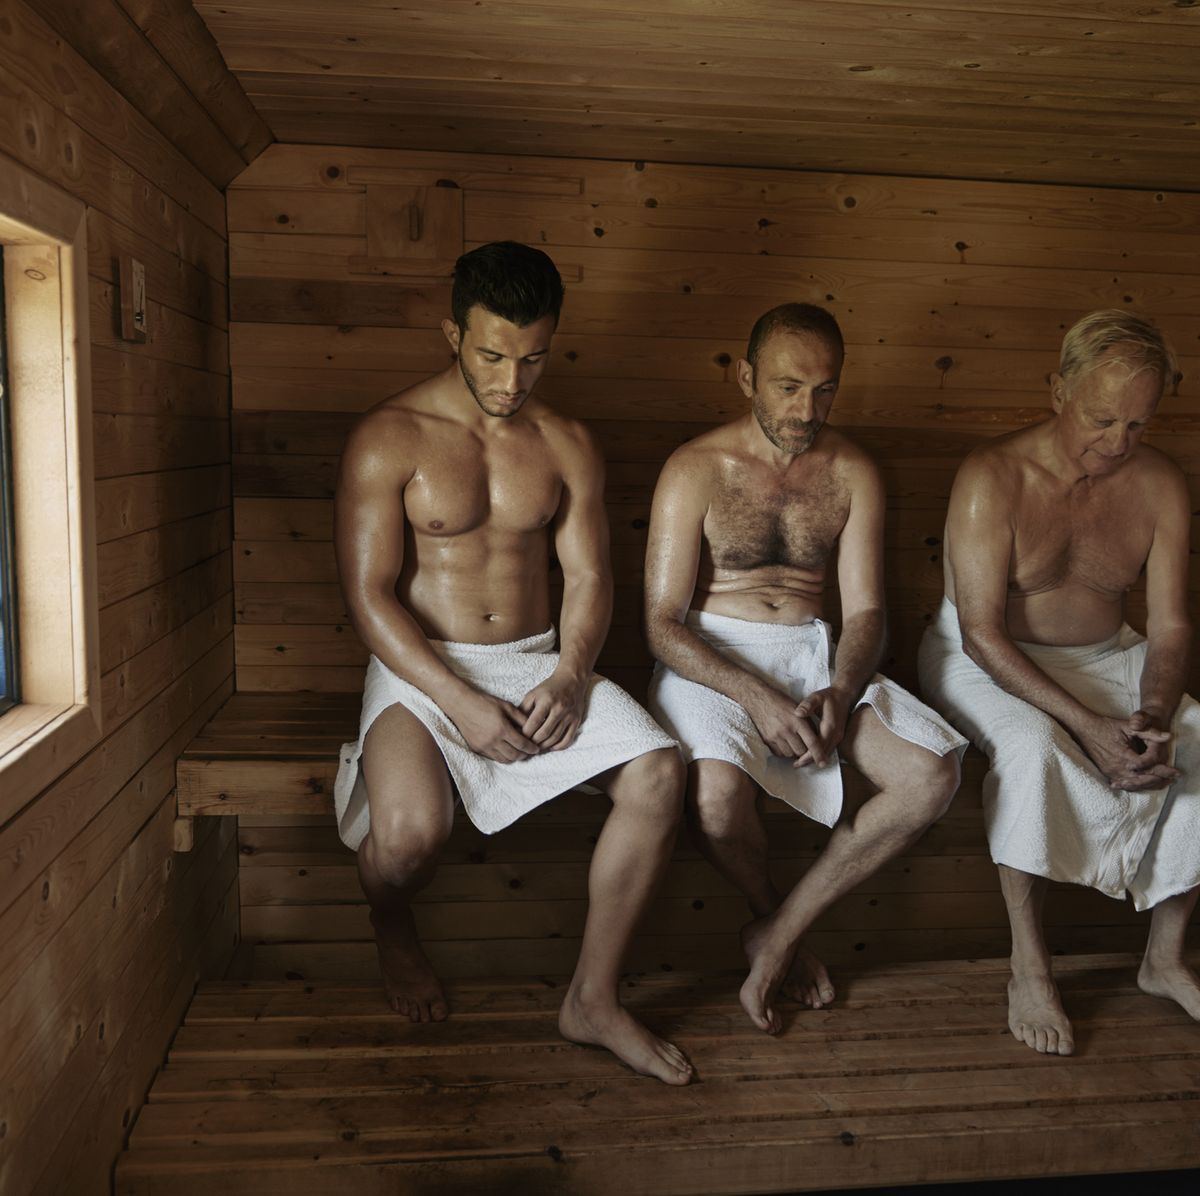 Efectos de realizar un HIIT con un traje-sauna (sauna suit) sobre el gasto  energético - Fisiología del Ejercicio